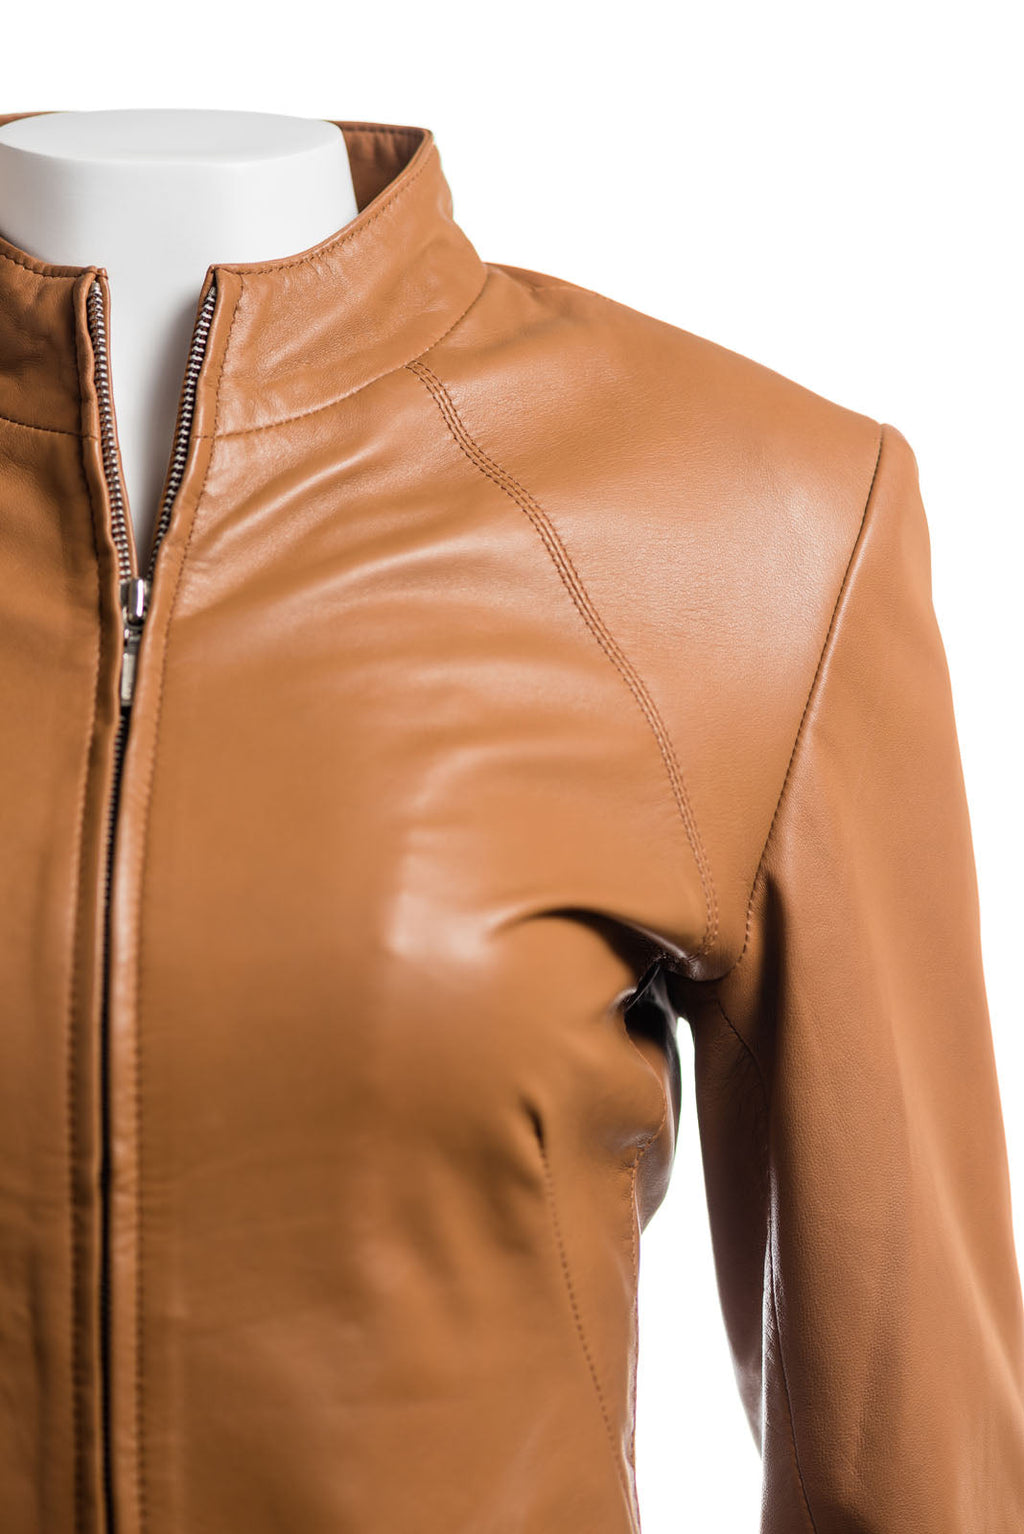 Ladies Tan Plain Short Zipped Leather Jacket: Angelina